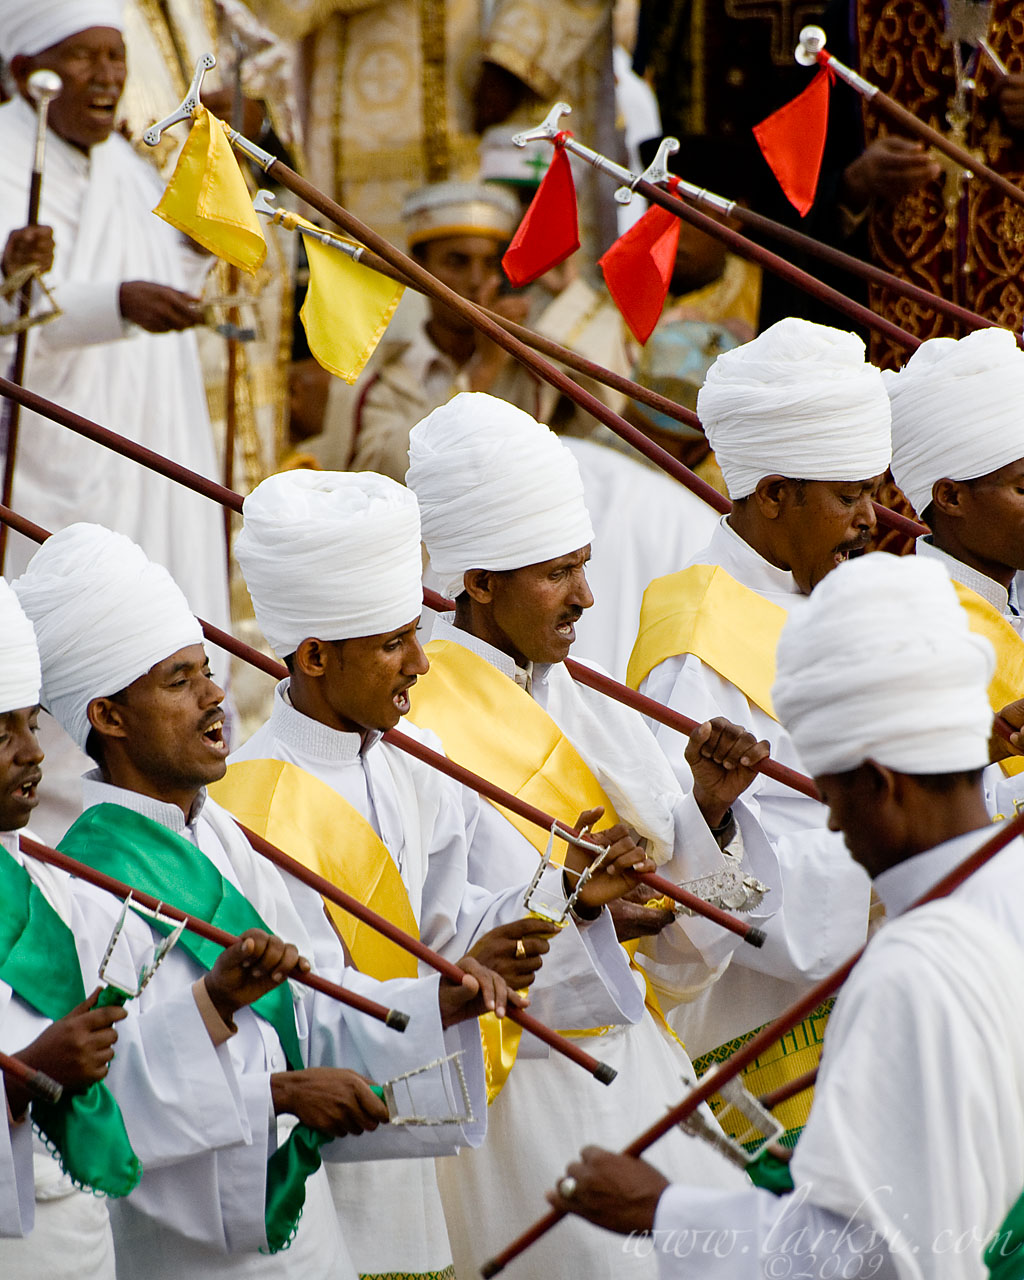 Celebrations, Timkat (Epiphany), Addis Ababa, Ethiopia, January 2009